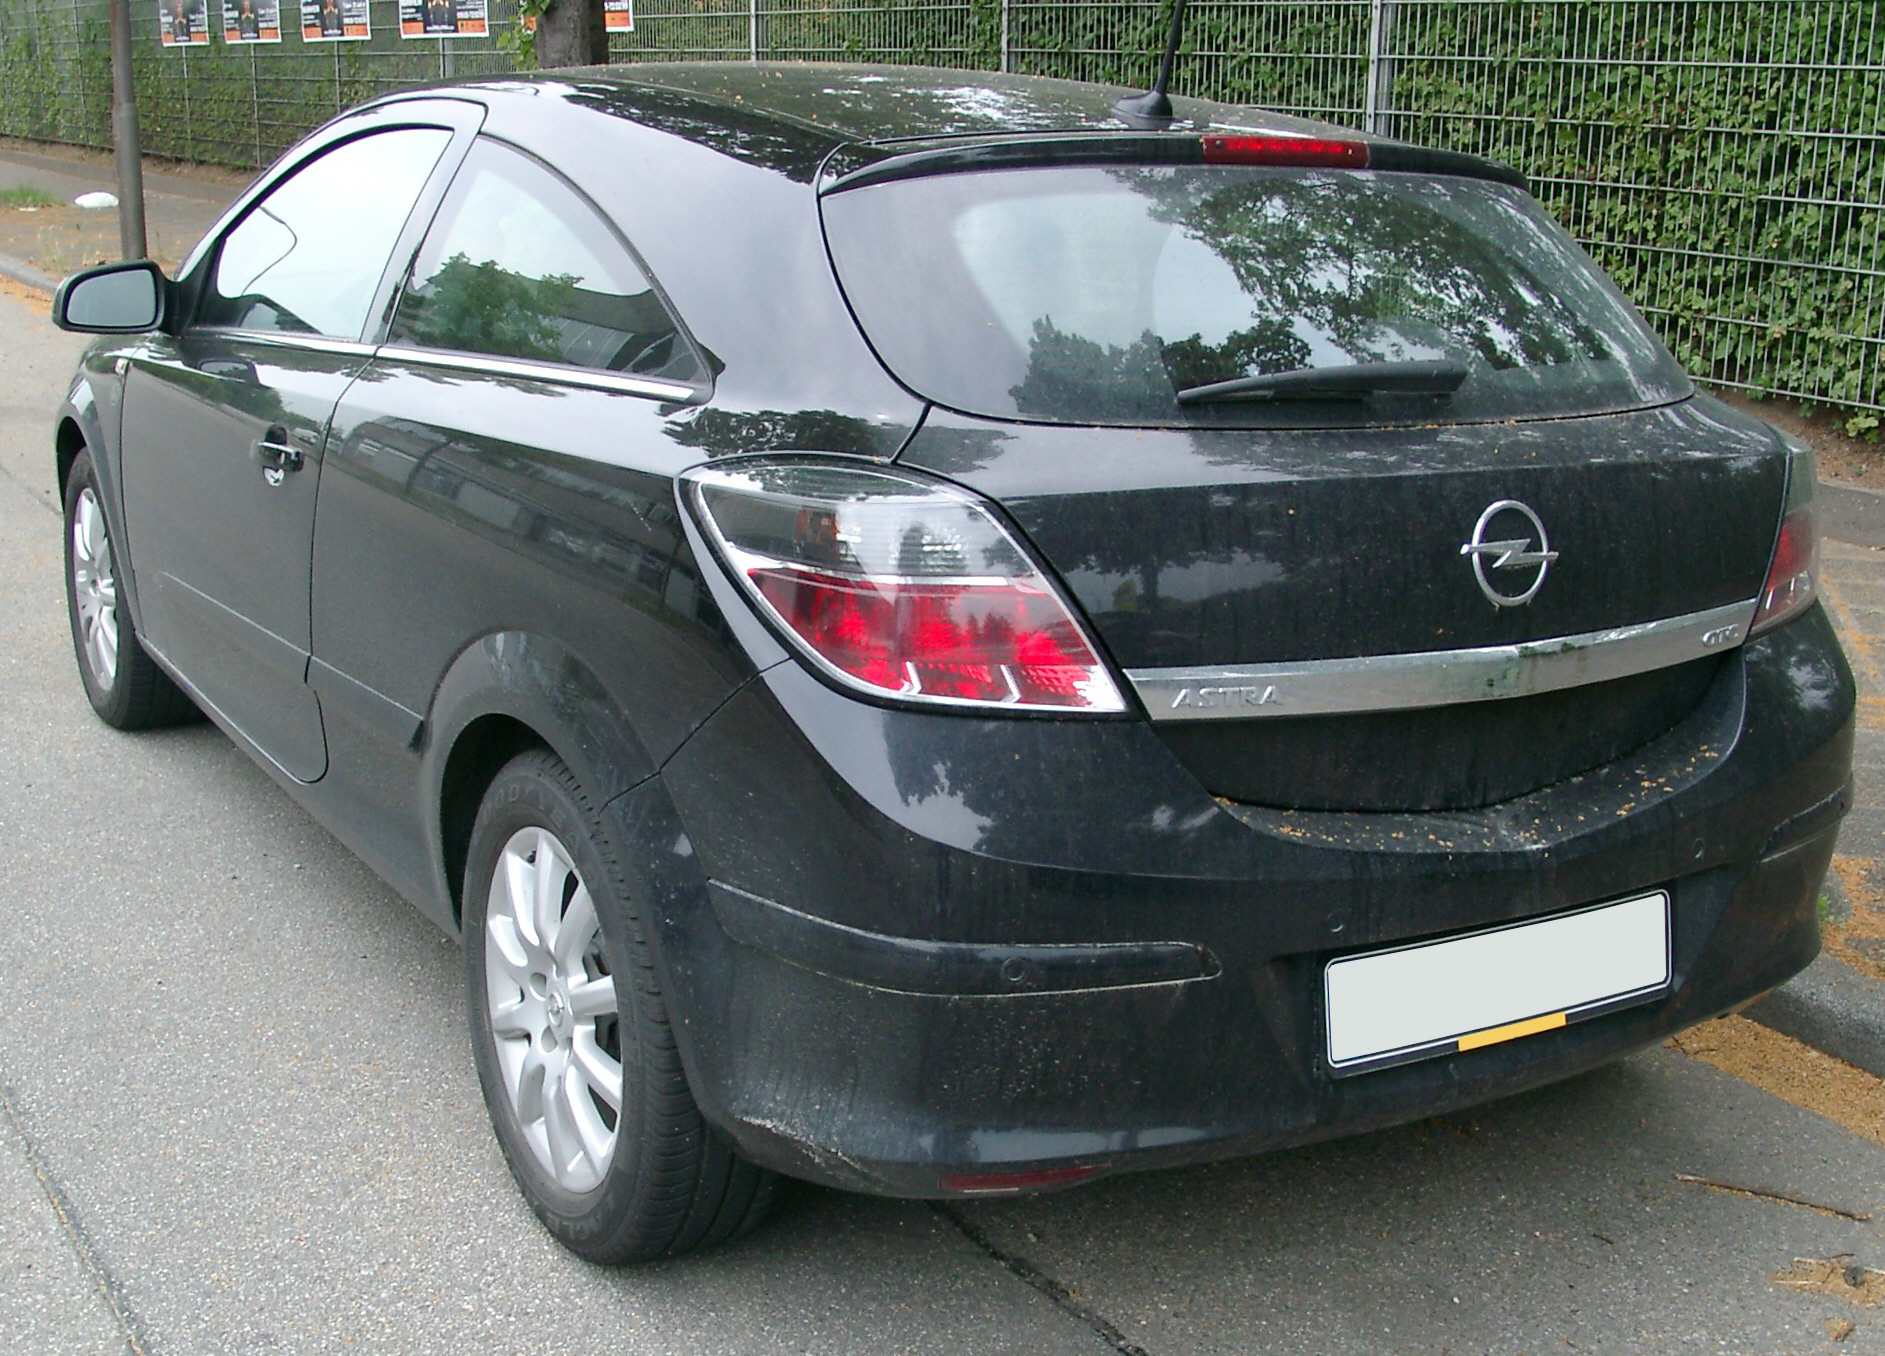 File:Opel Astra GTC rear 20070609.jpg - Wikimedia Commons